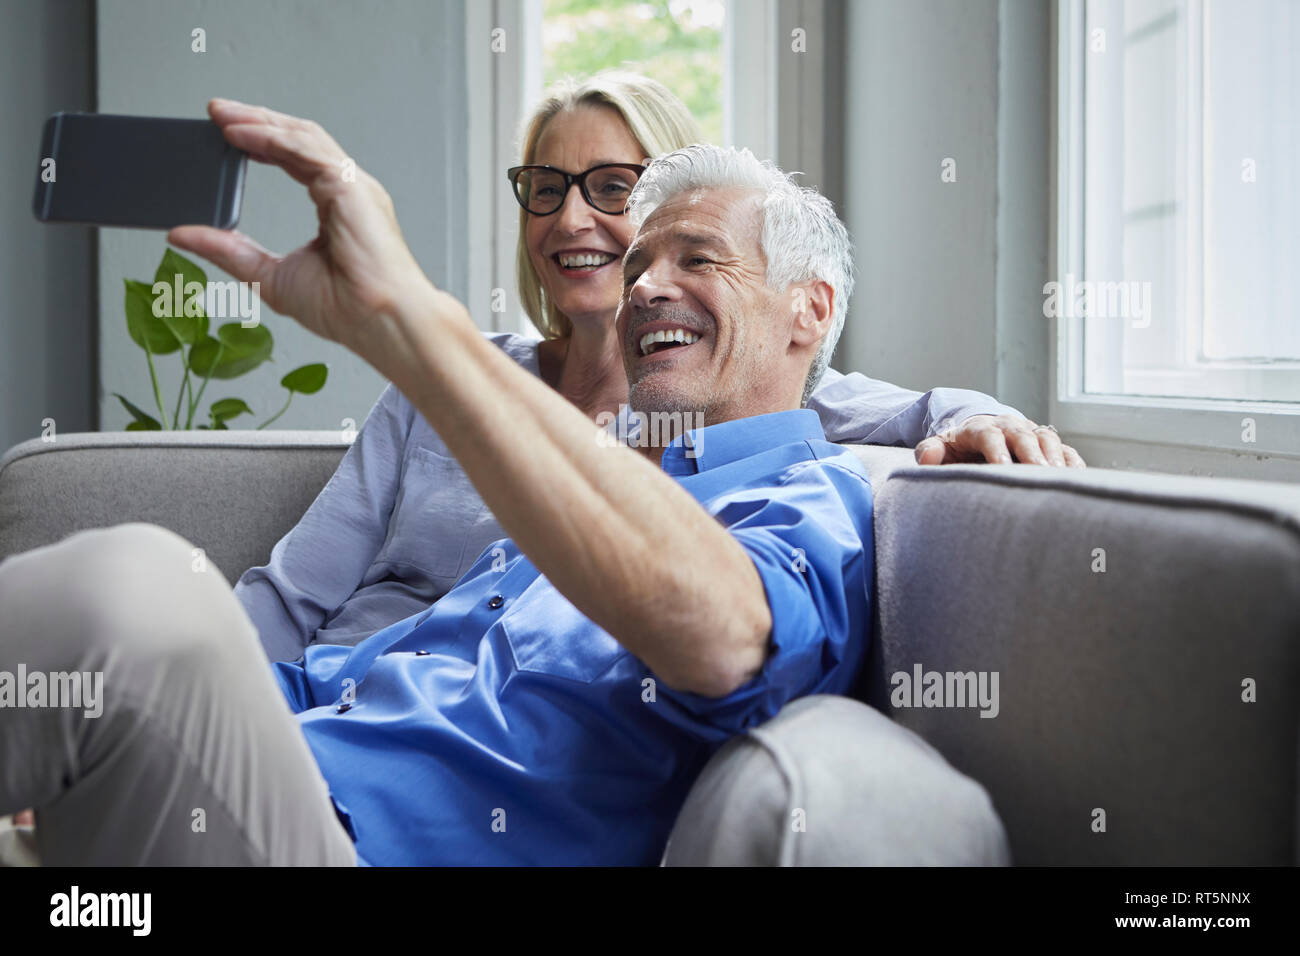 Feliz pareja sentado en el sofá en casa tomando un selfie Foto de stock